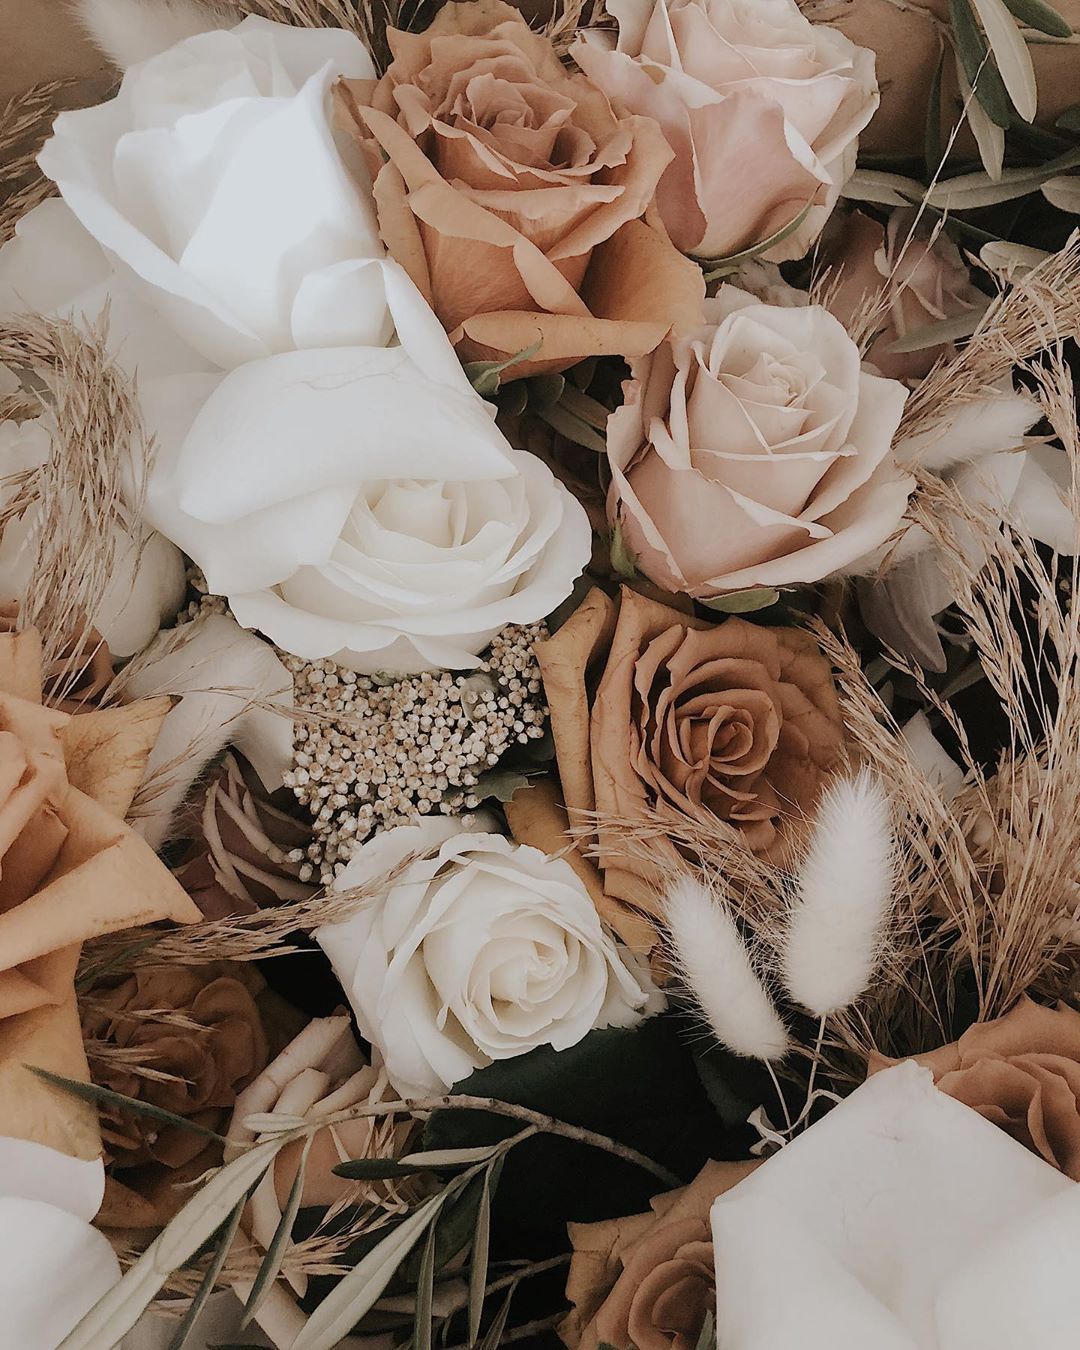 sammy neale on Instagram: “super stunning floral arrangement from the wedding I photograp. Blumenmuster hintergrund, Blumen hintergrund iphone, Blumen hintergrund